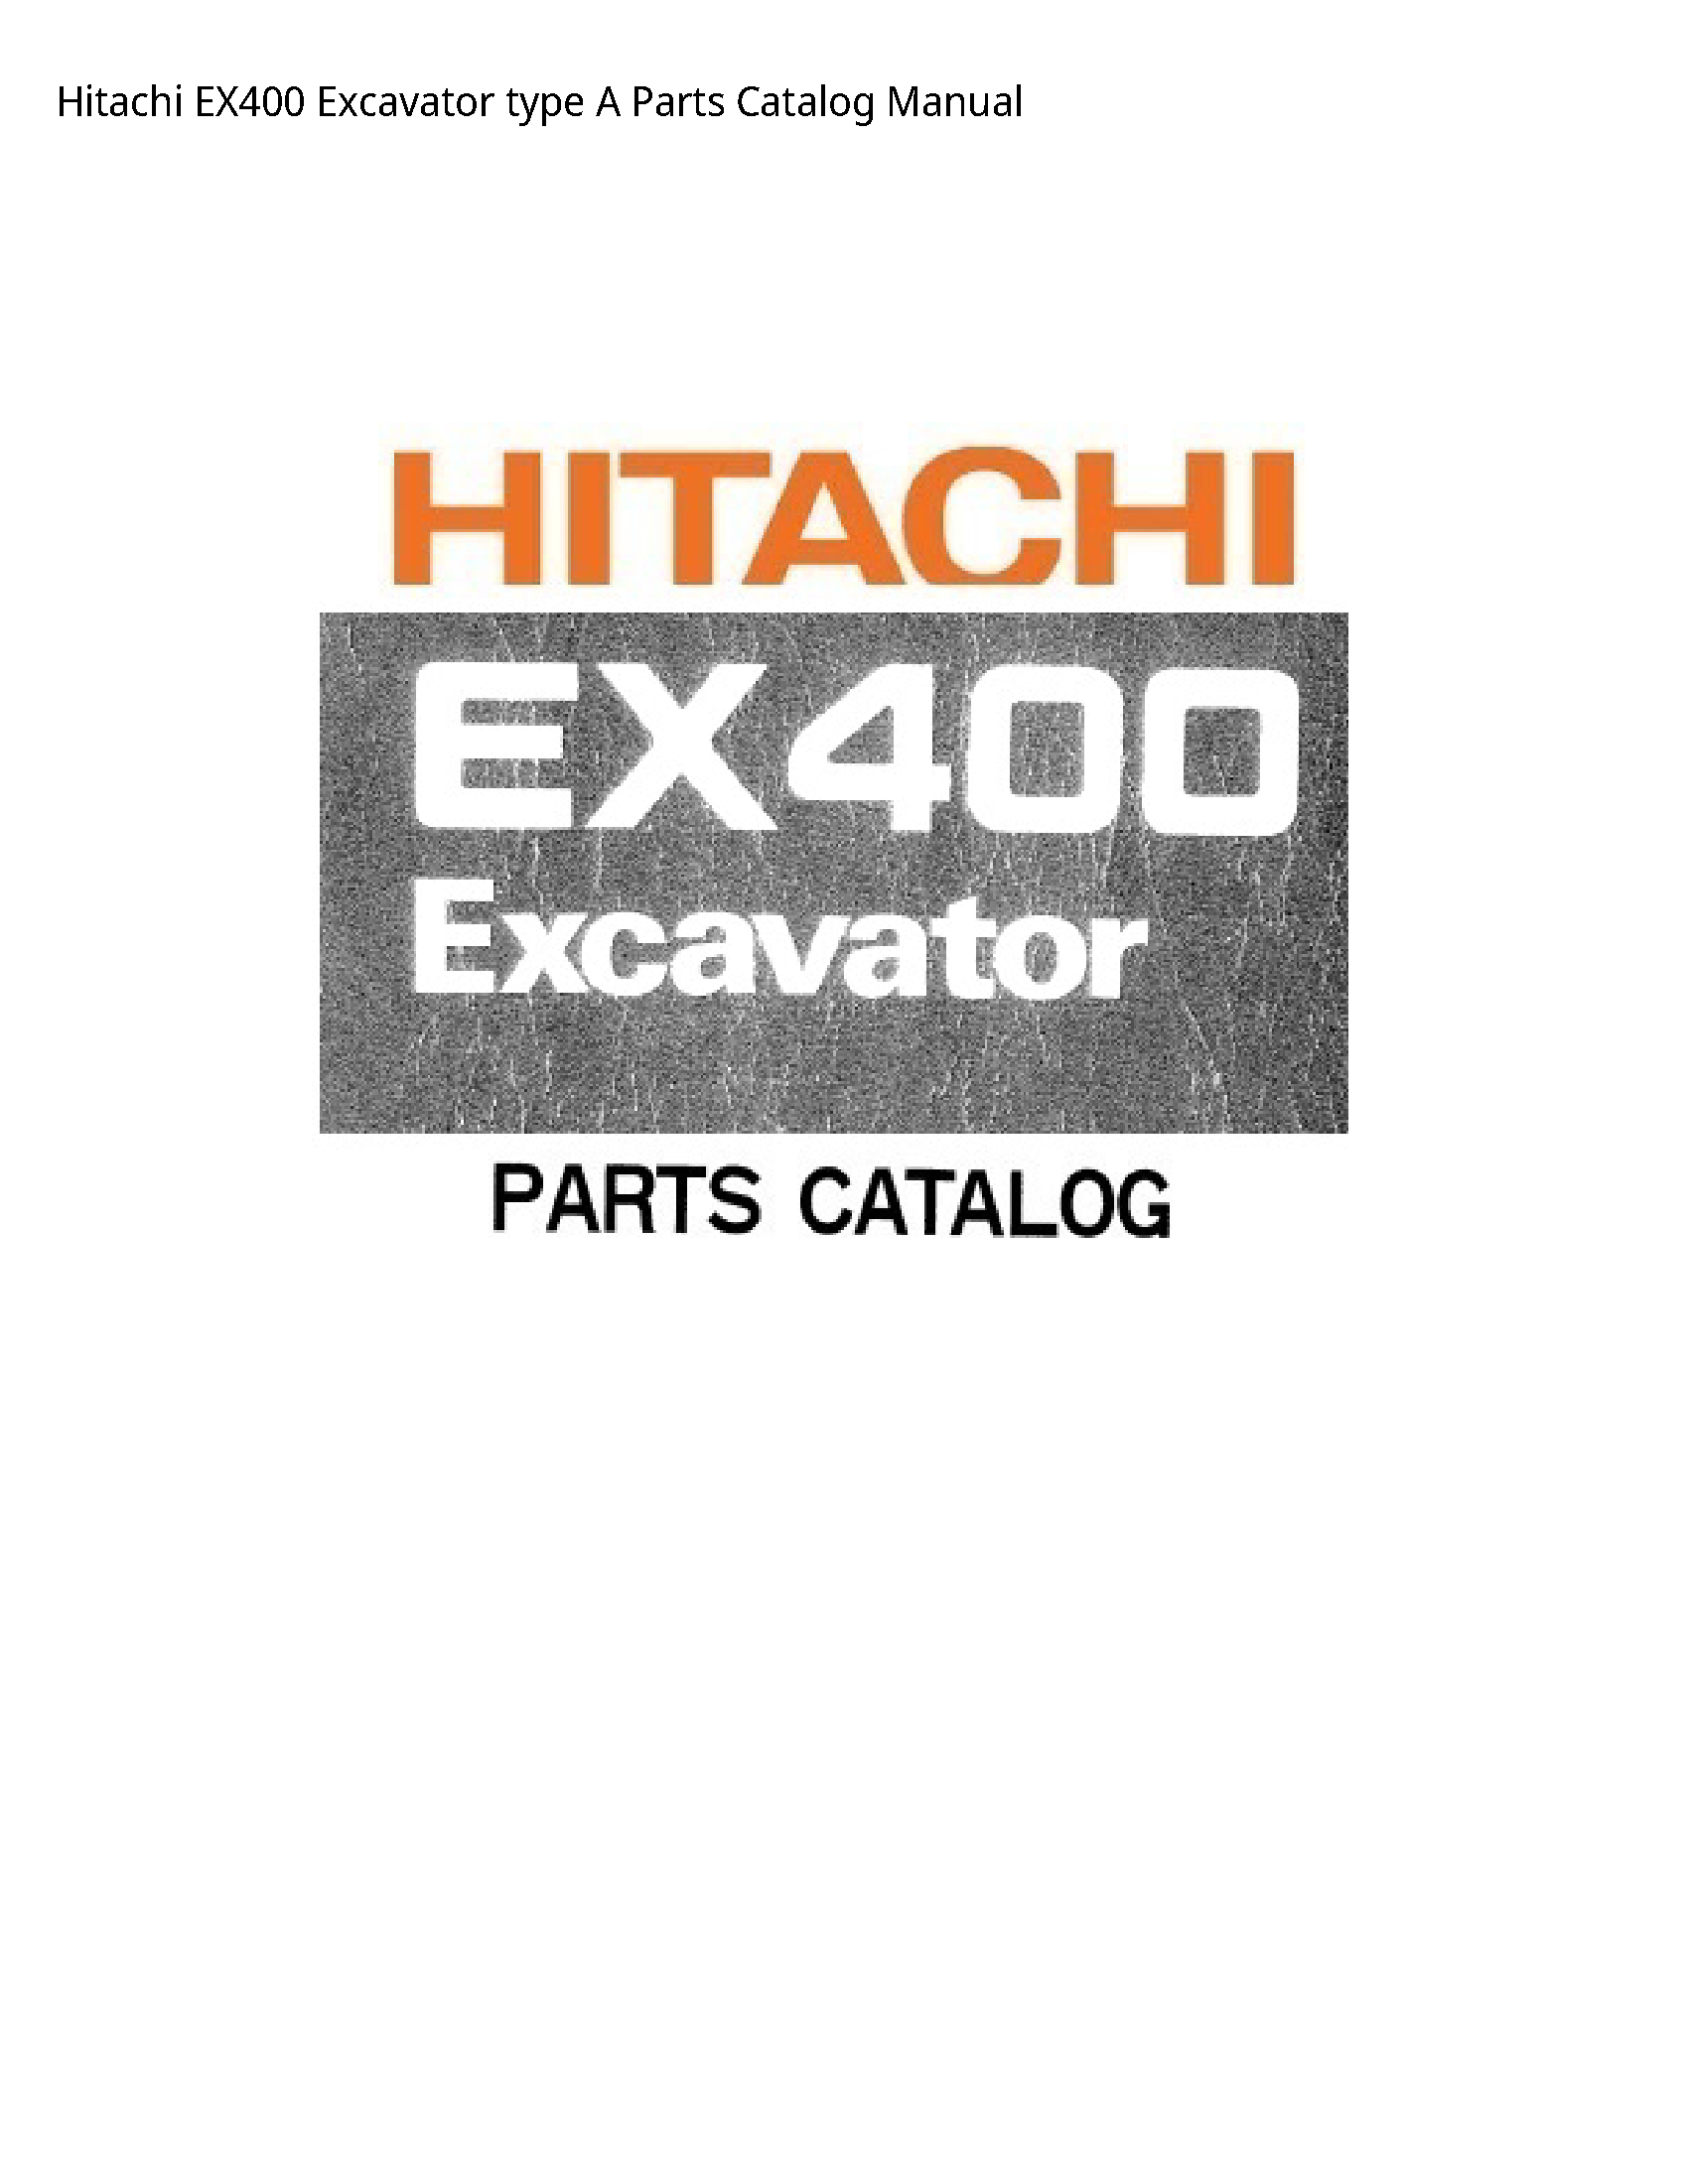 Hitachi EX400 Excavator type Parts Catalog manual